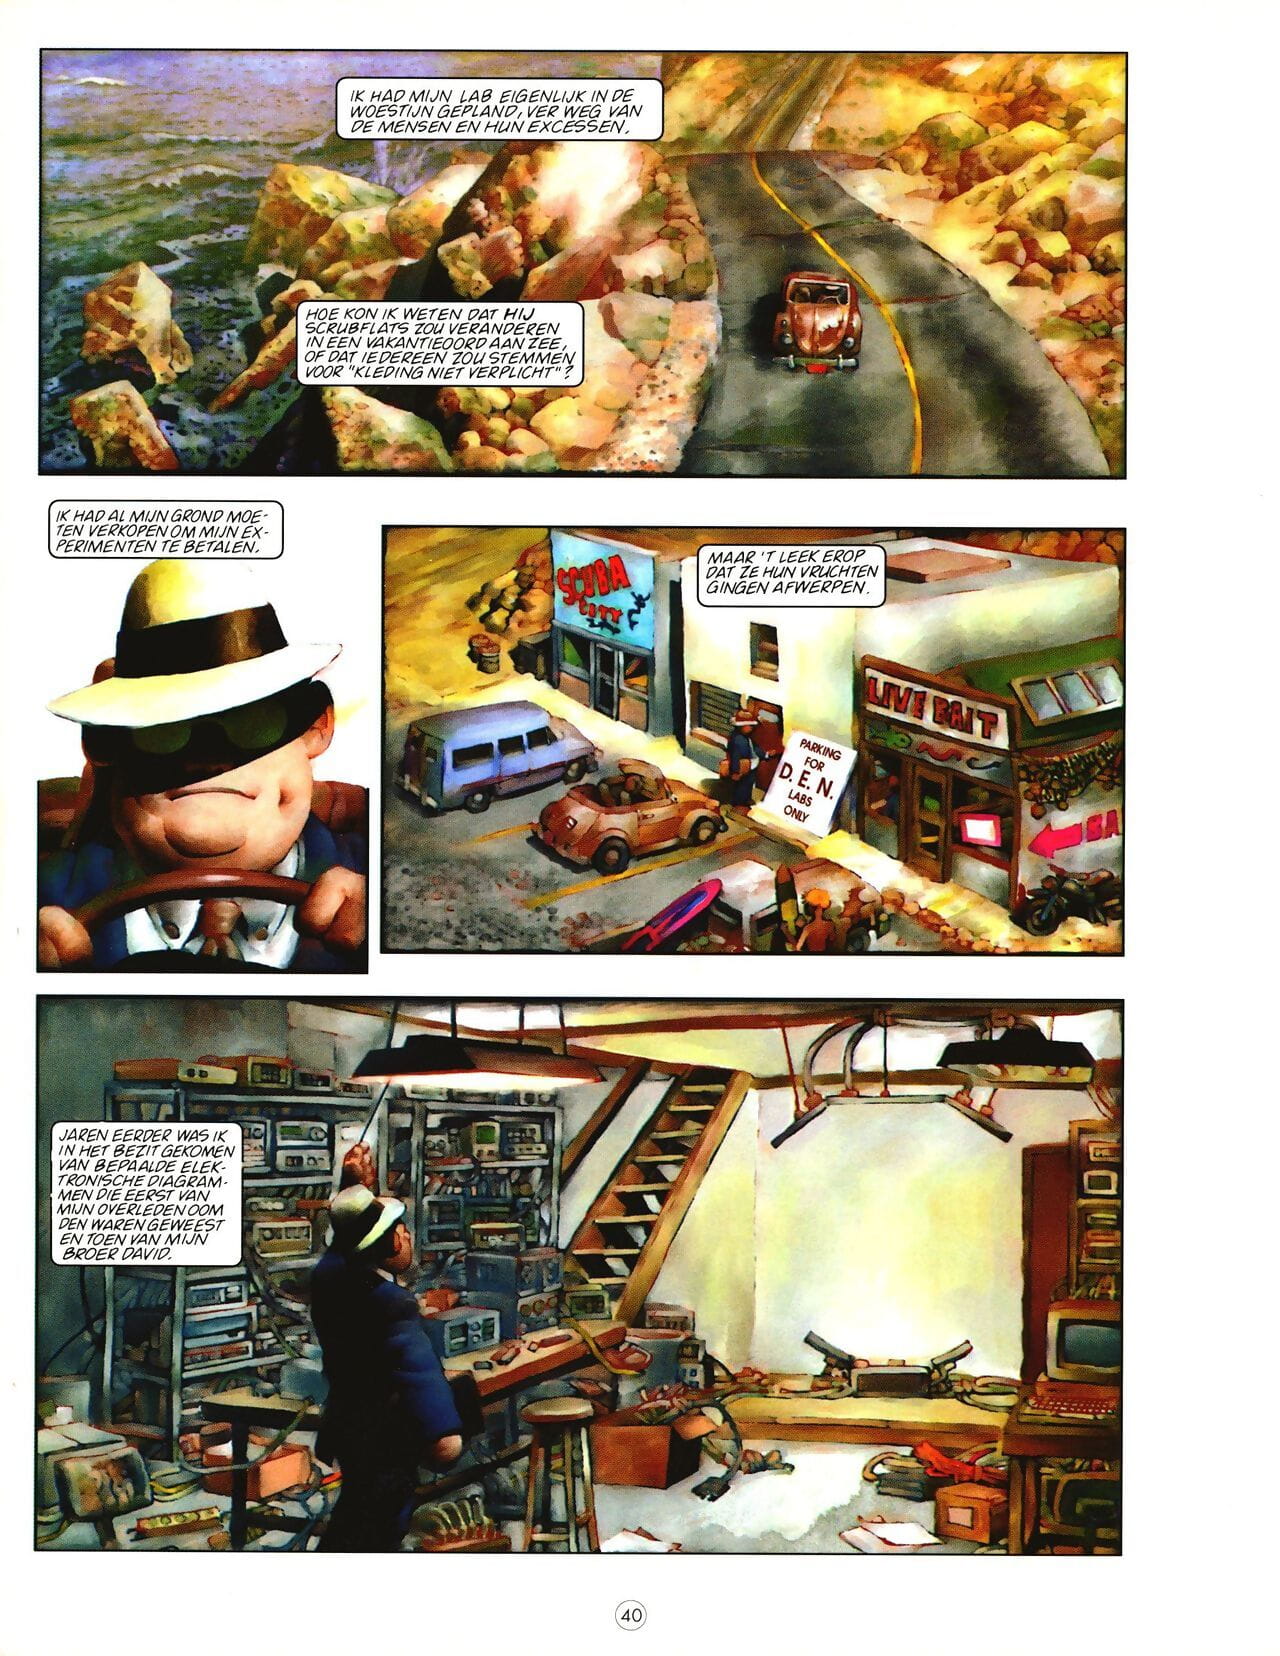 Penthouse Comix Magazine 01 - part 2 page 1